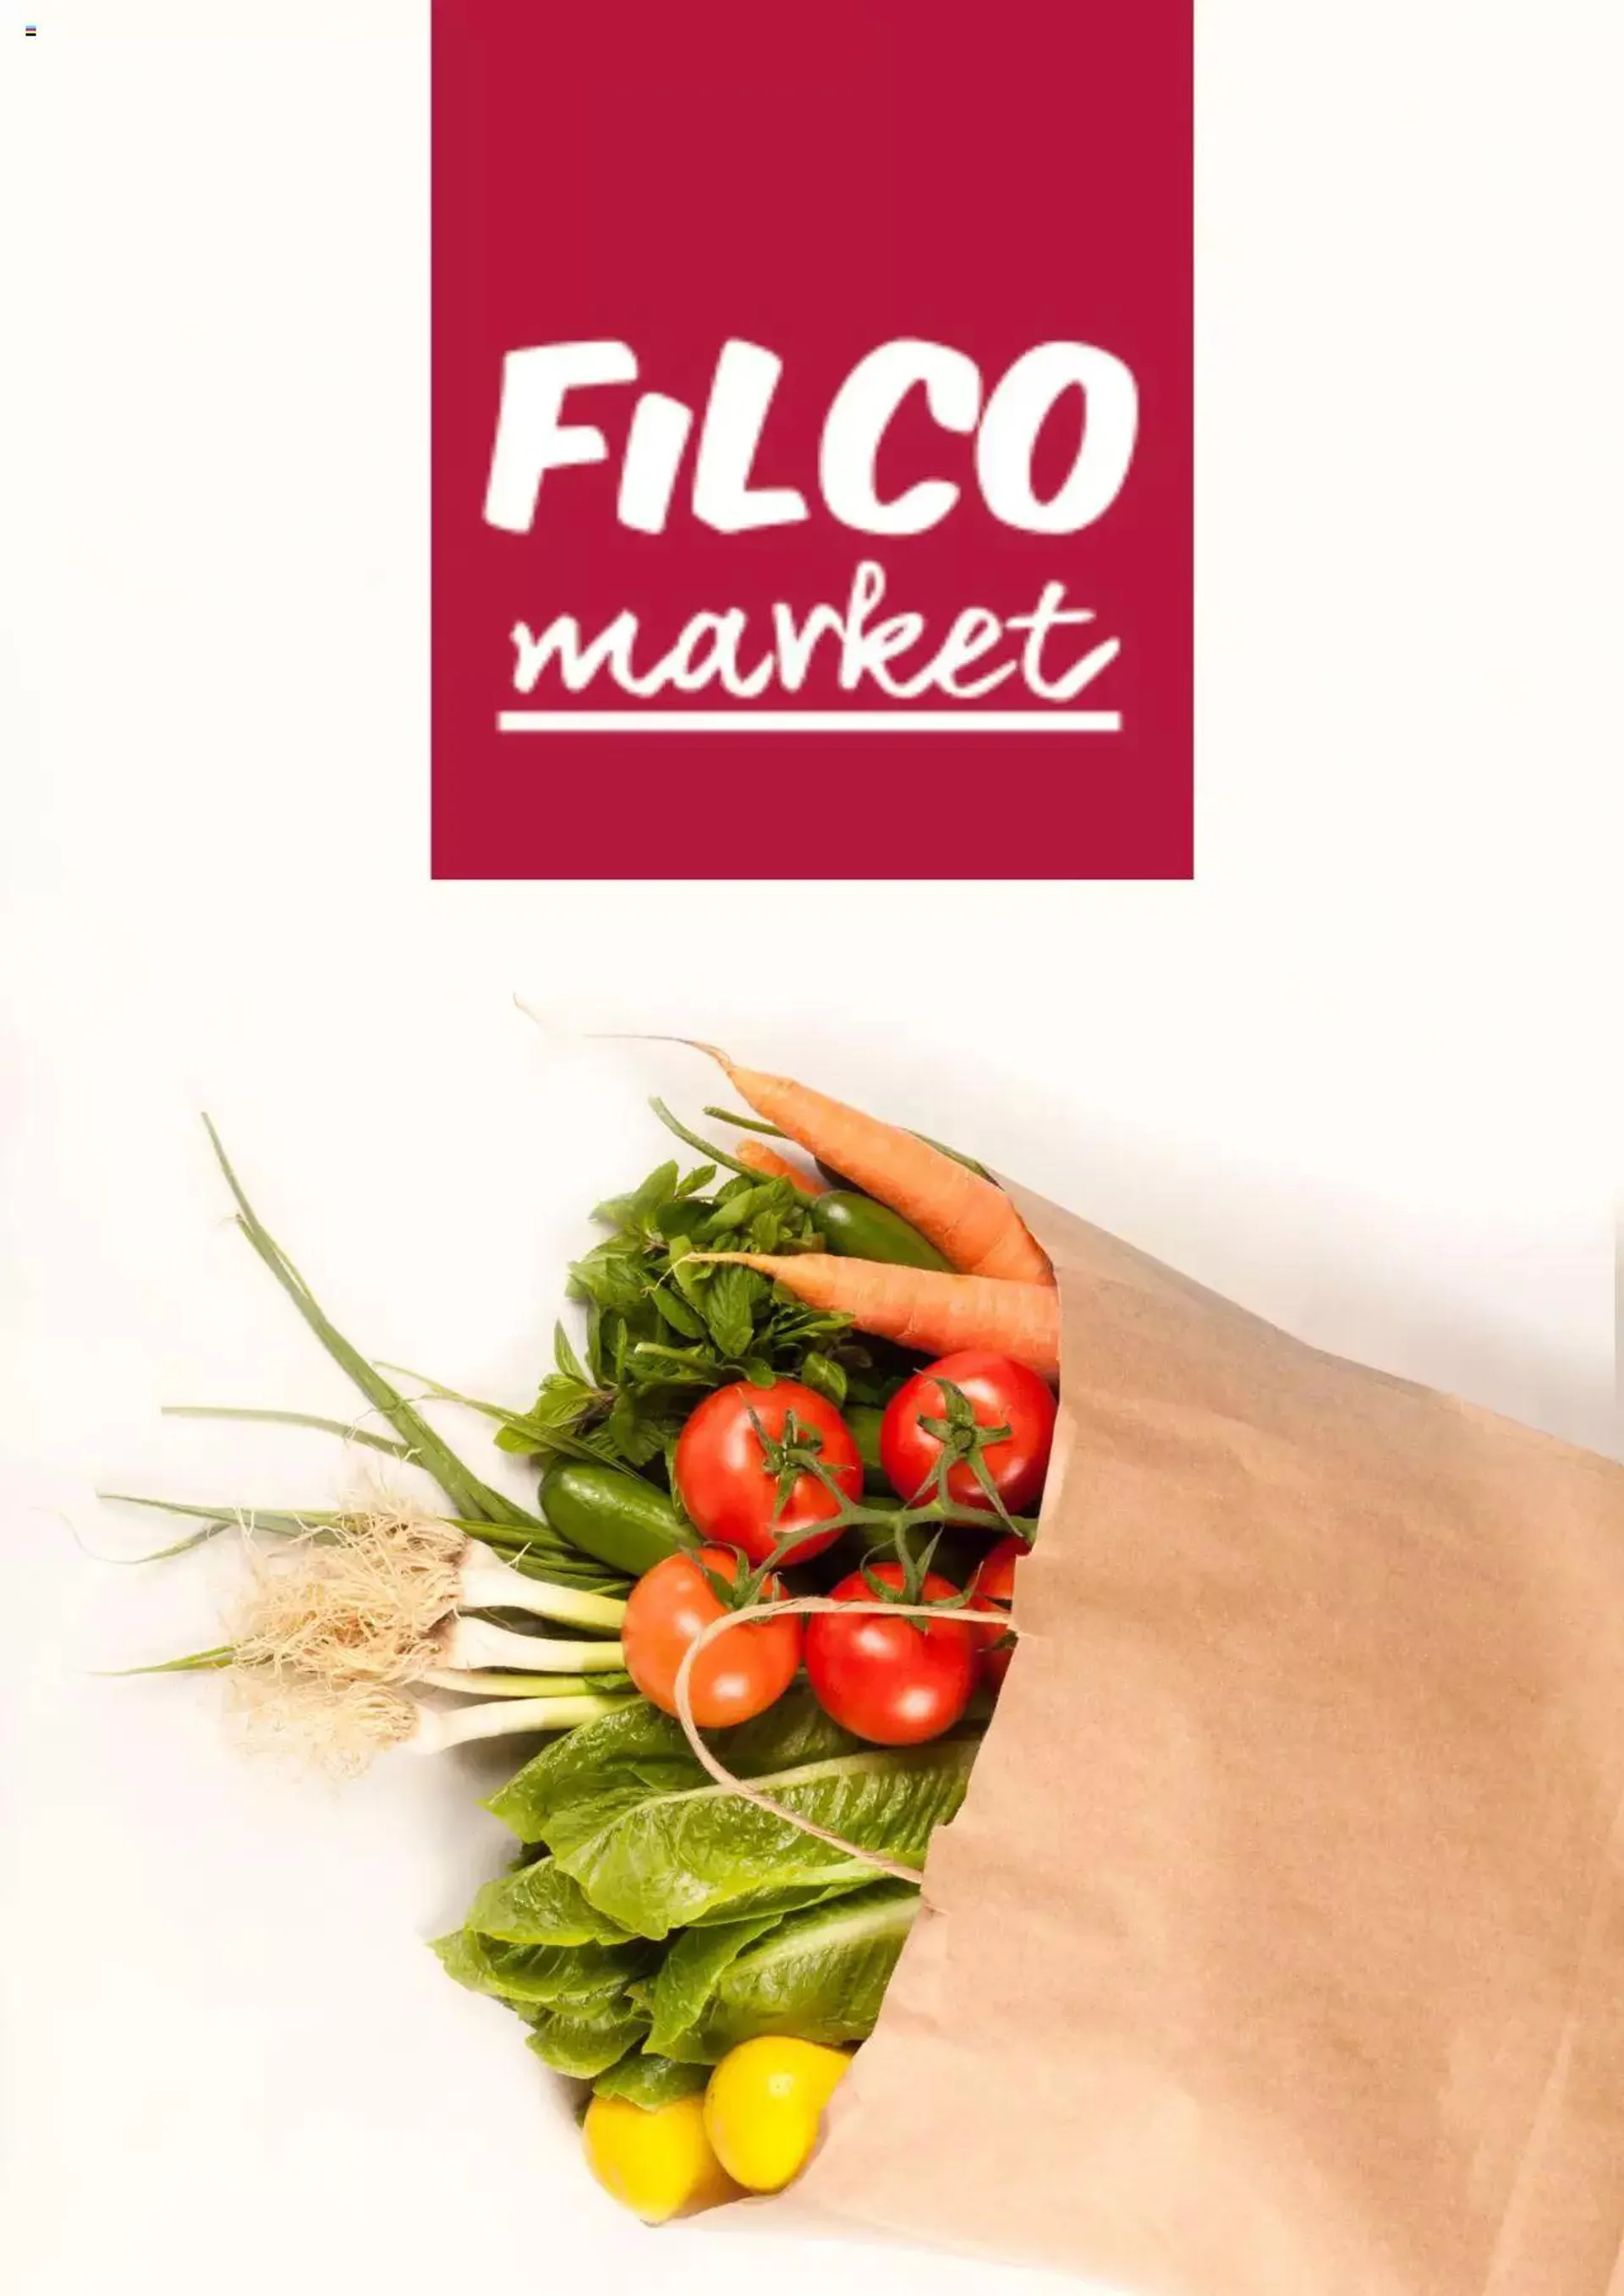 Filco offers